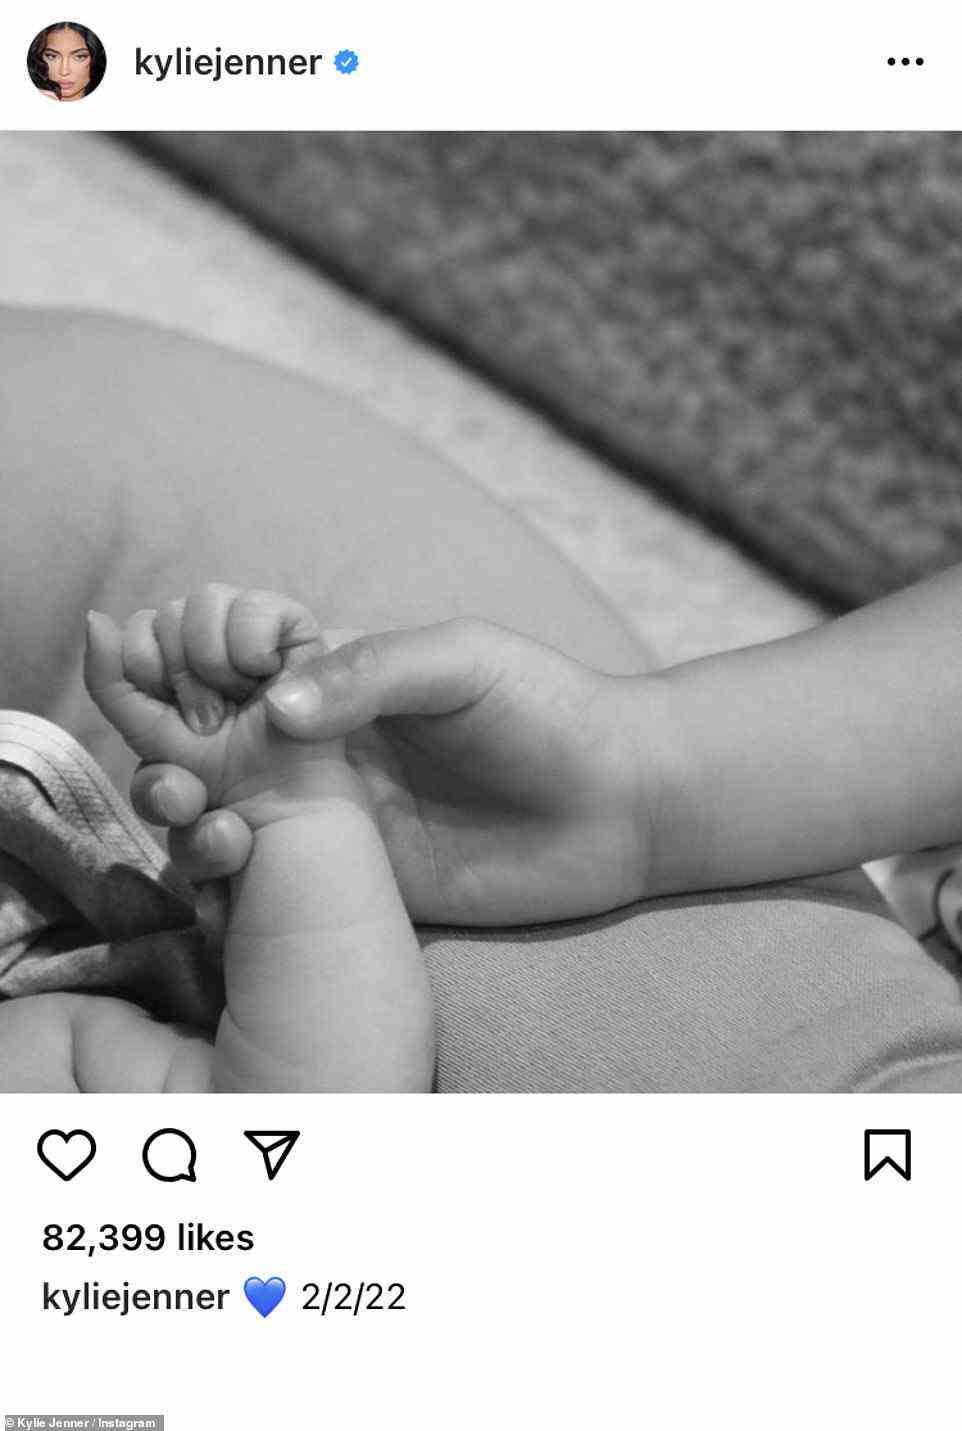 Enthüllung der Geburt: Am Montag gab Kylie bekannt, dass sie ihr zweites Kind mit einem einfachen Schnappschuss auf Instagram des Reality-Stars und Make-up-Moguls zur Welt gebracht hatte, der die Hand des Neugeborenen hielt, und enthüllte das Geburtsdatum als 2/2/22